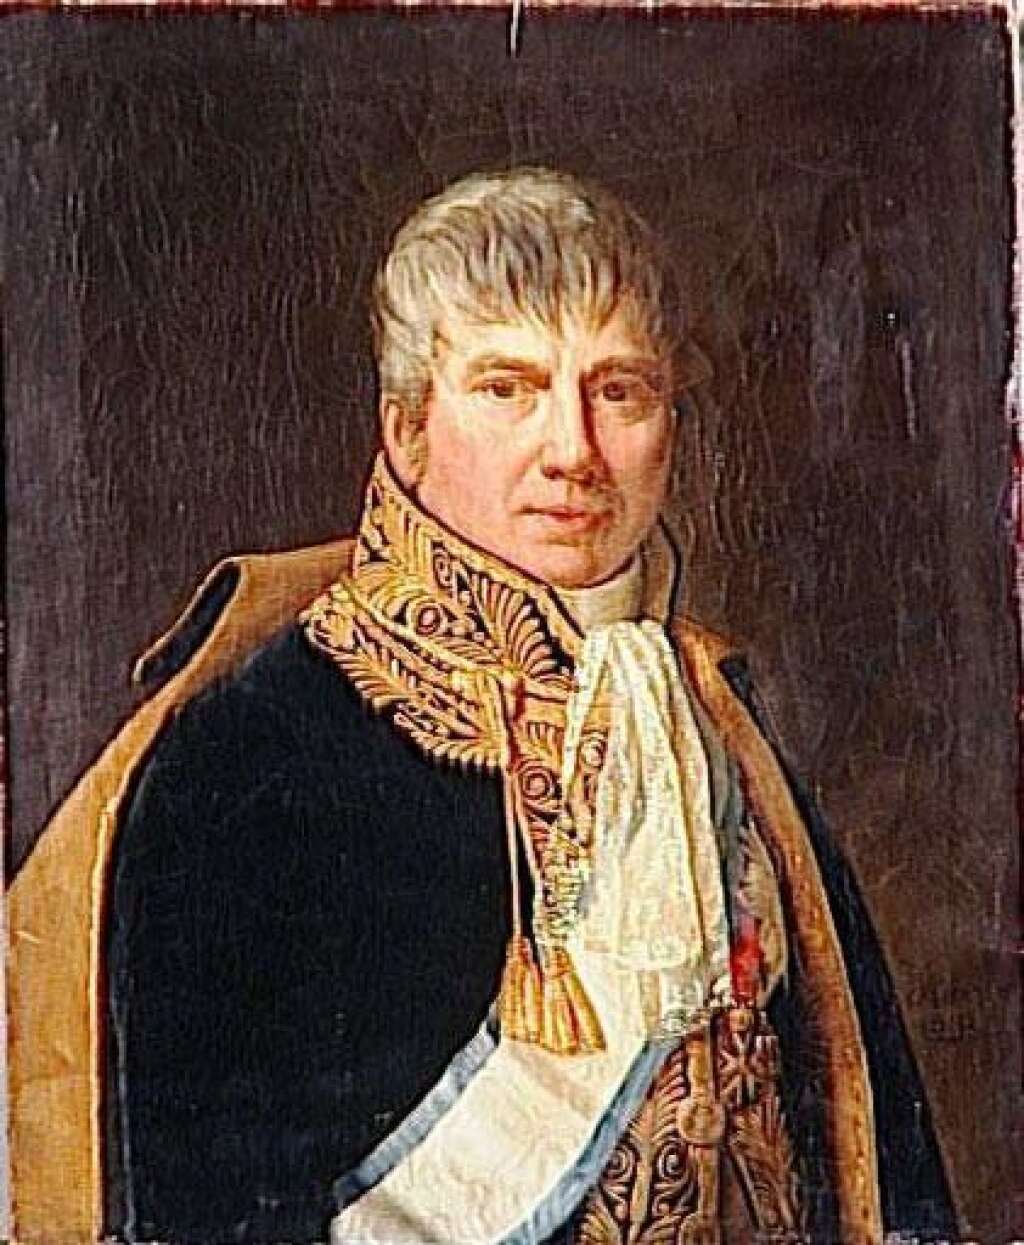 Général Michel Ordener (inhumé en 1811) - Général napoléonien qui s'est illustré à la bataille d'Austerlitz. La plupart des militaires "panthéonisés" l'ont été sous le Premier Empire.